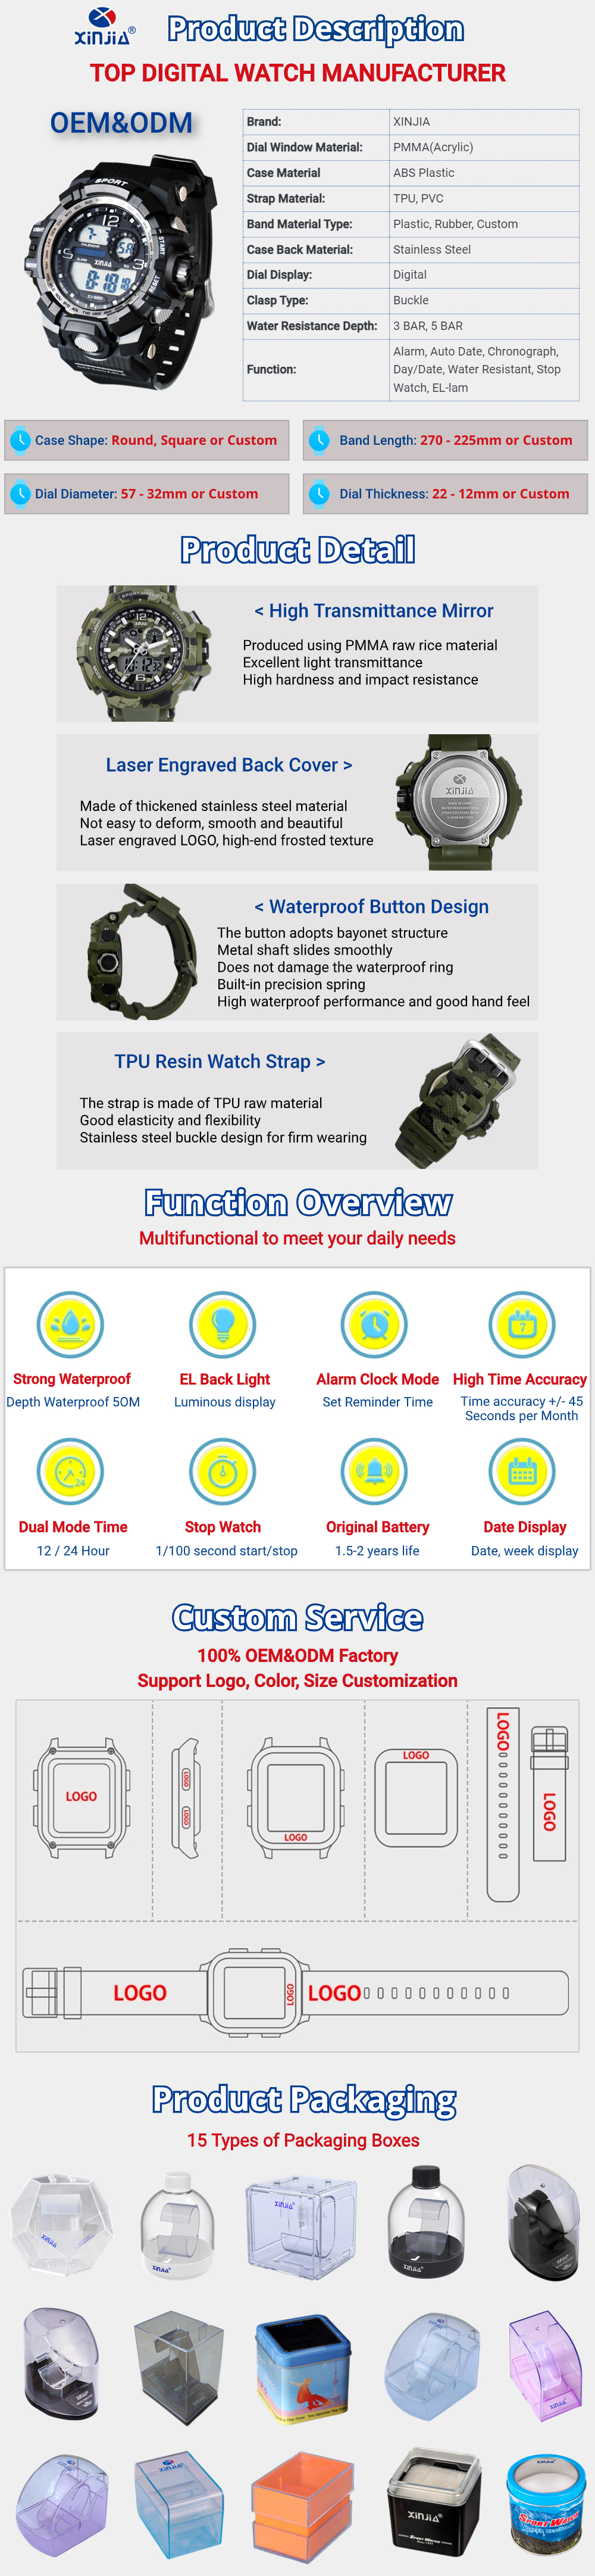 Digital Watch Manufacturer Product Description